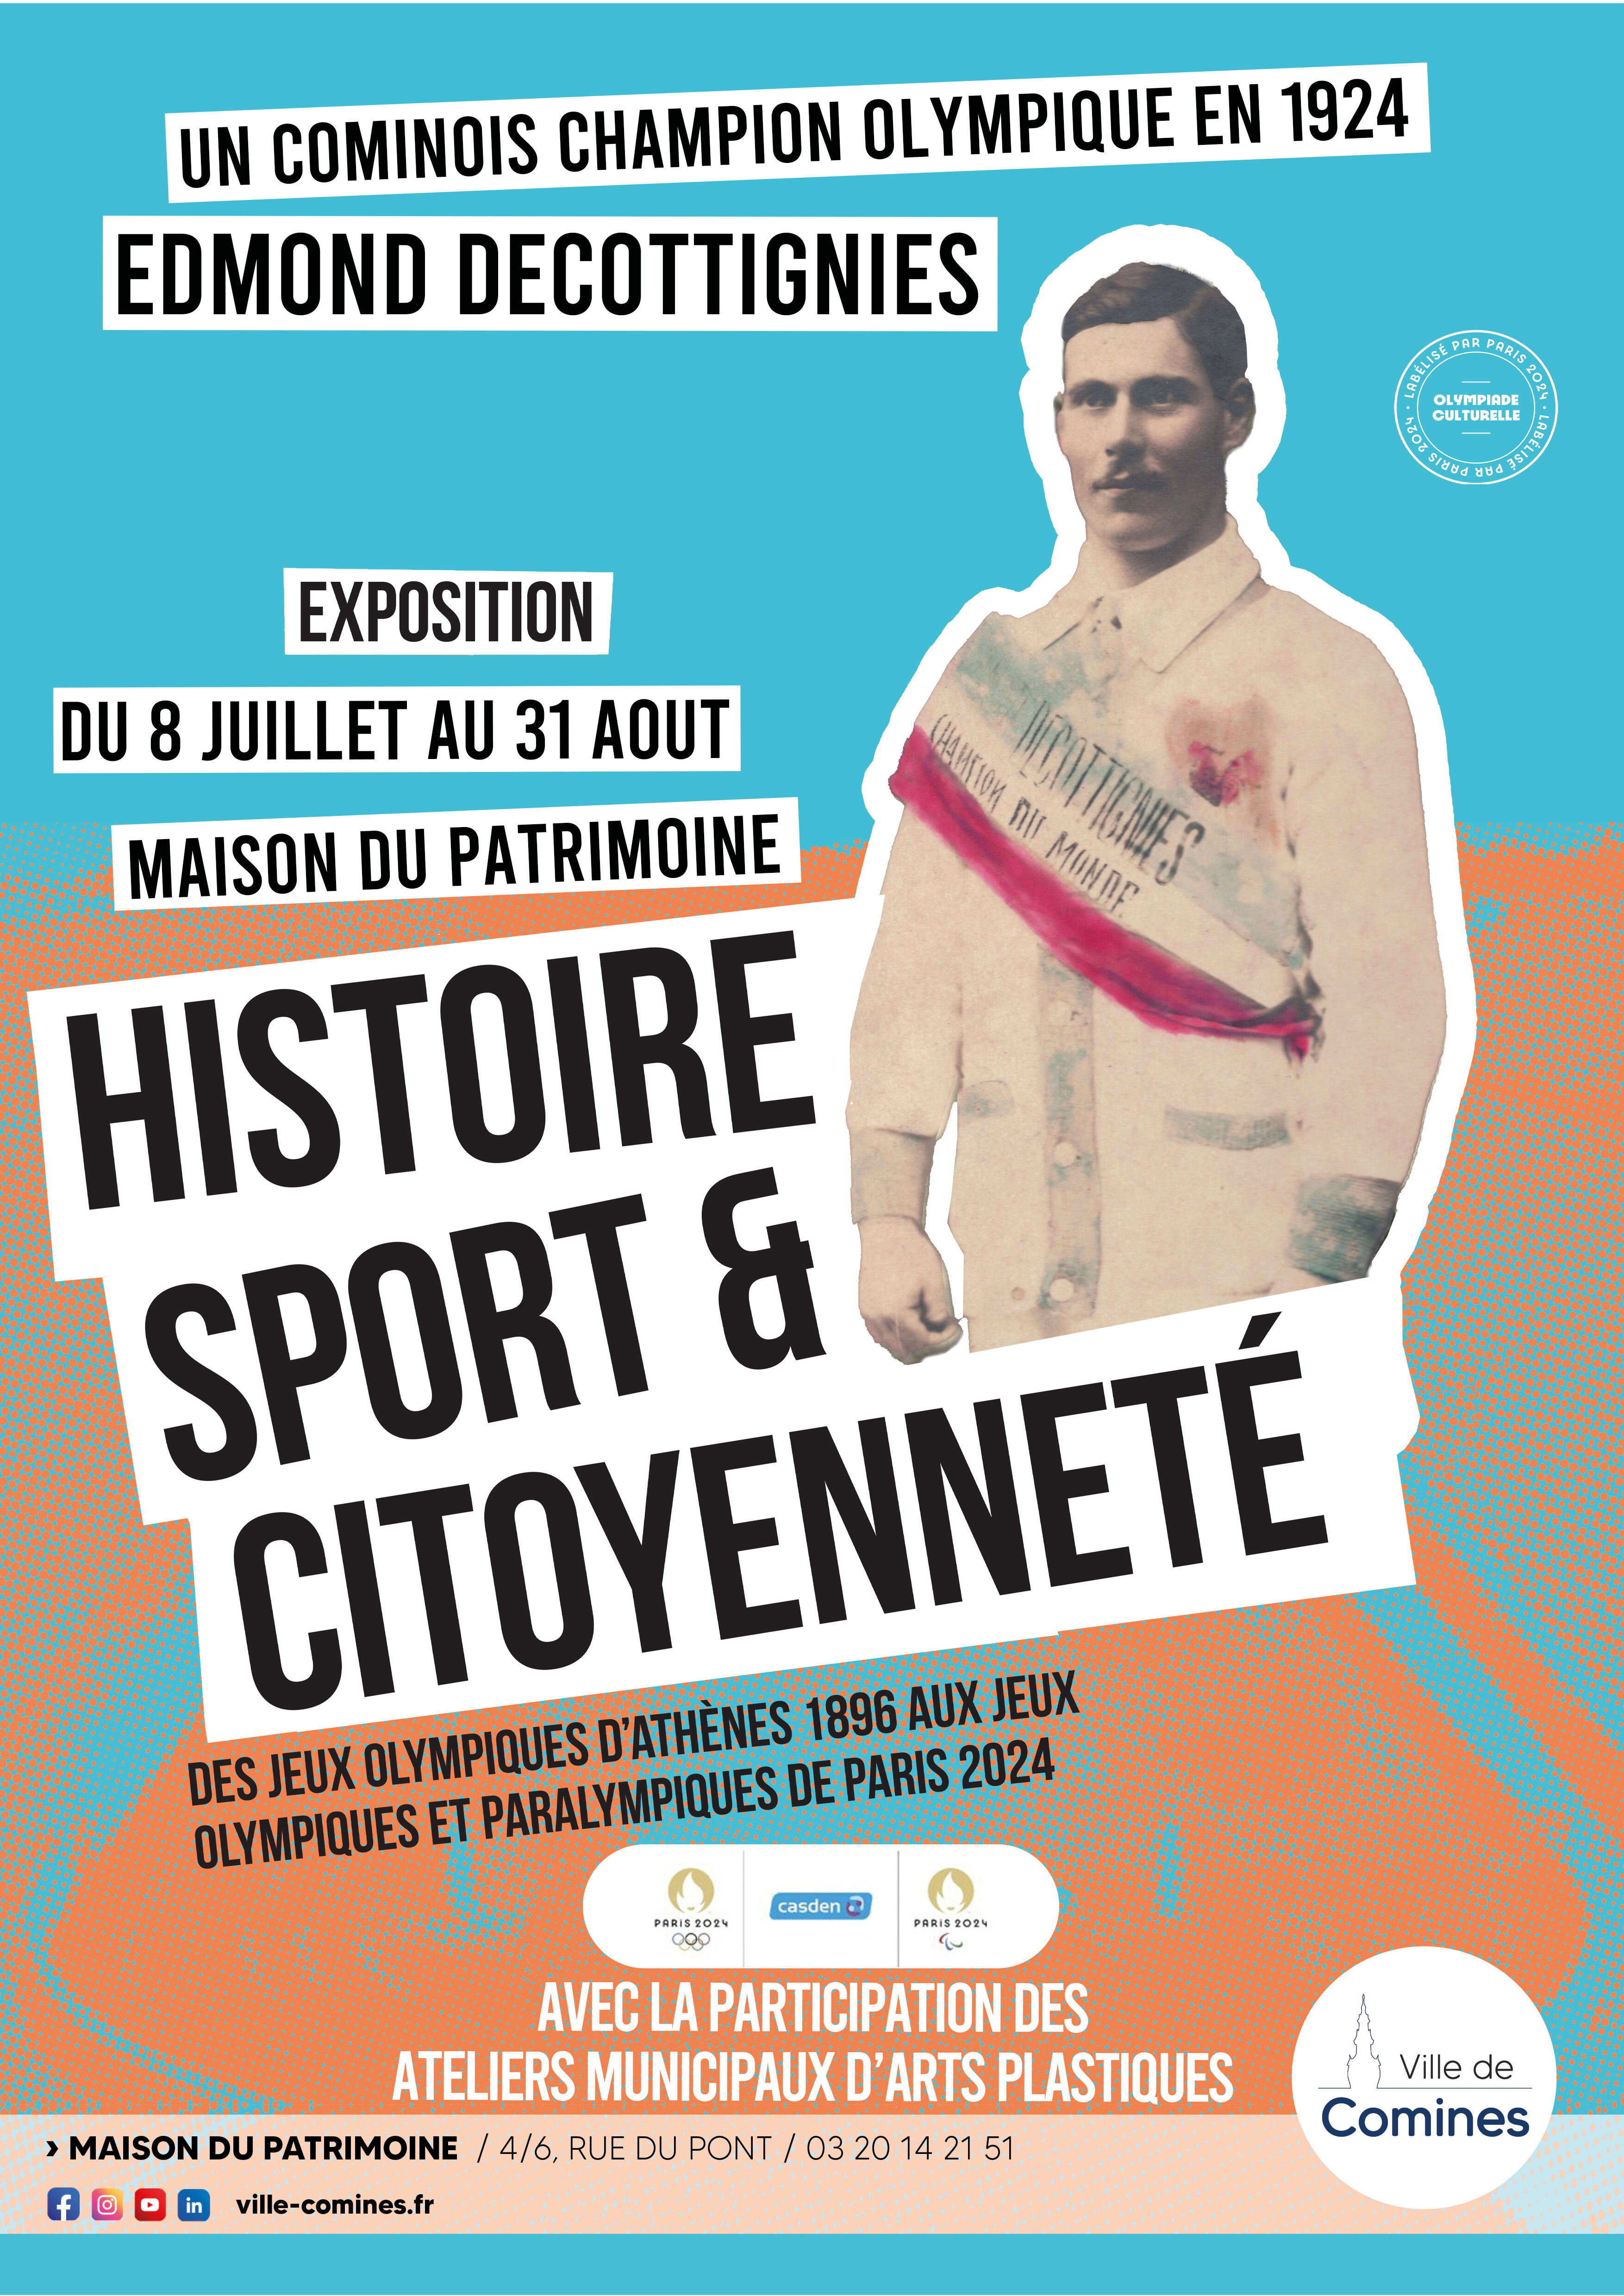 images/agenda/a3_-_histoire_sport_et_citoyenneté.jpg#joomlaImage://local-images/agenda/a3_-_histoire_sport_et_citoyenneté.jpg?width=3508&height=4961